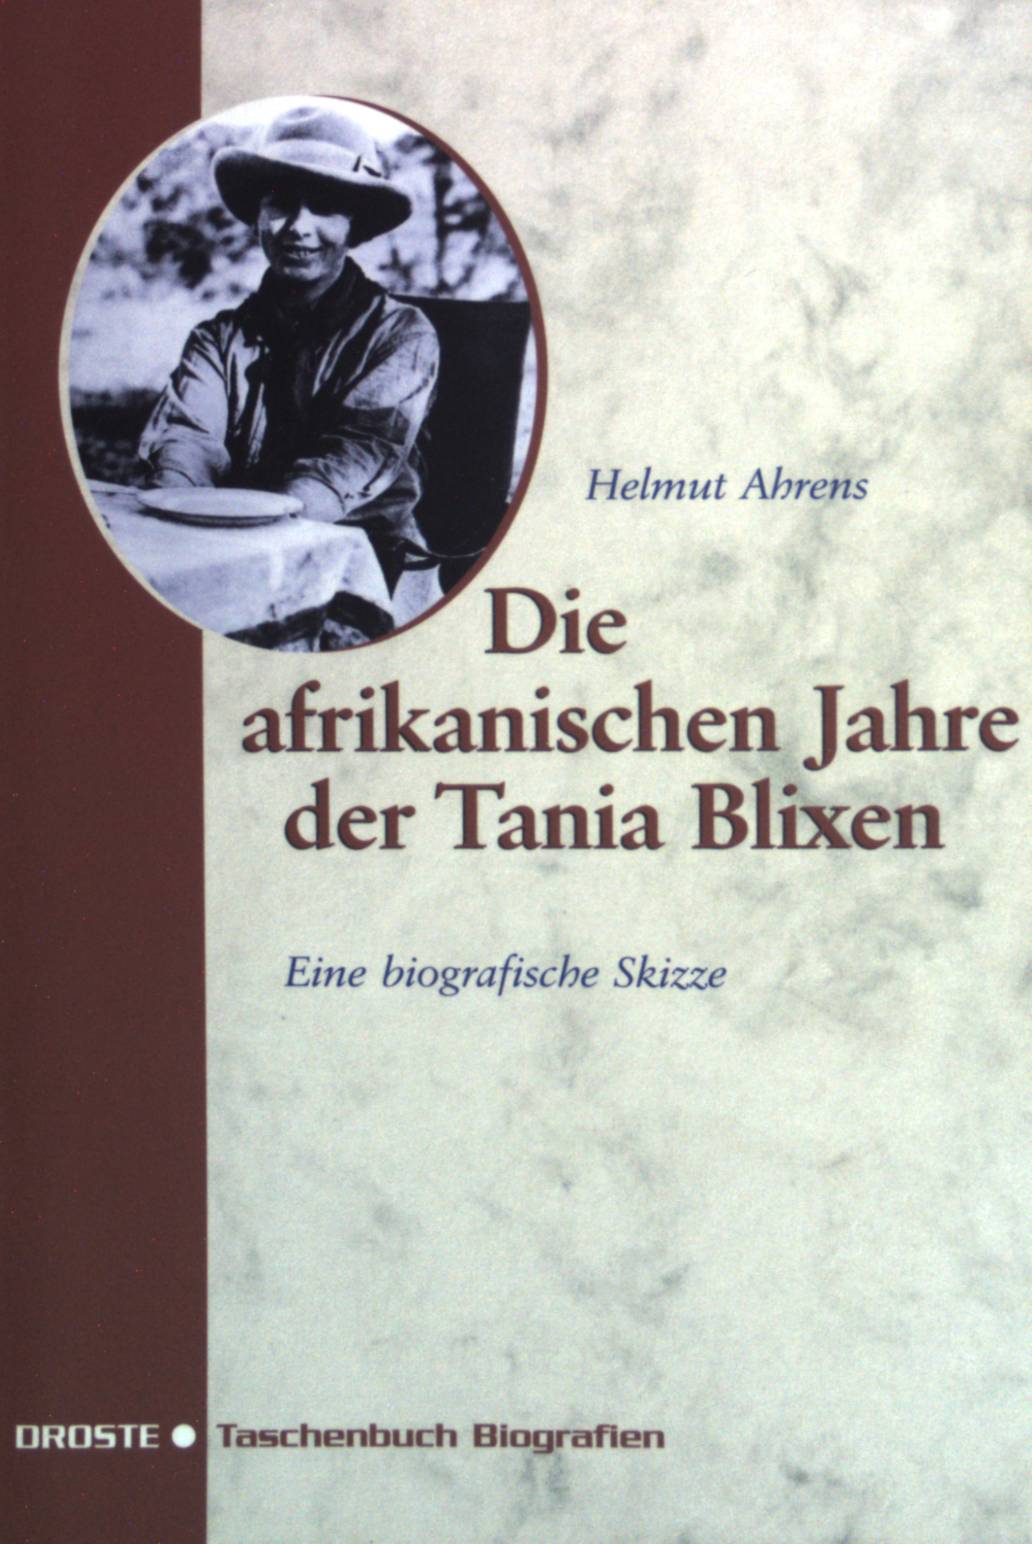 Die afrikanischen Jahre der Tania Blixen : eine biografische Skizze. Droste-Taschenbuch Biografien - Ahrens, Helmut